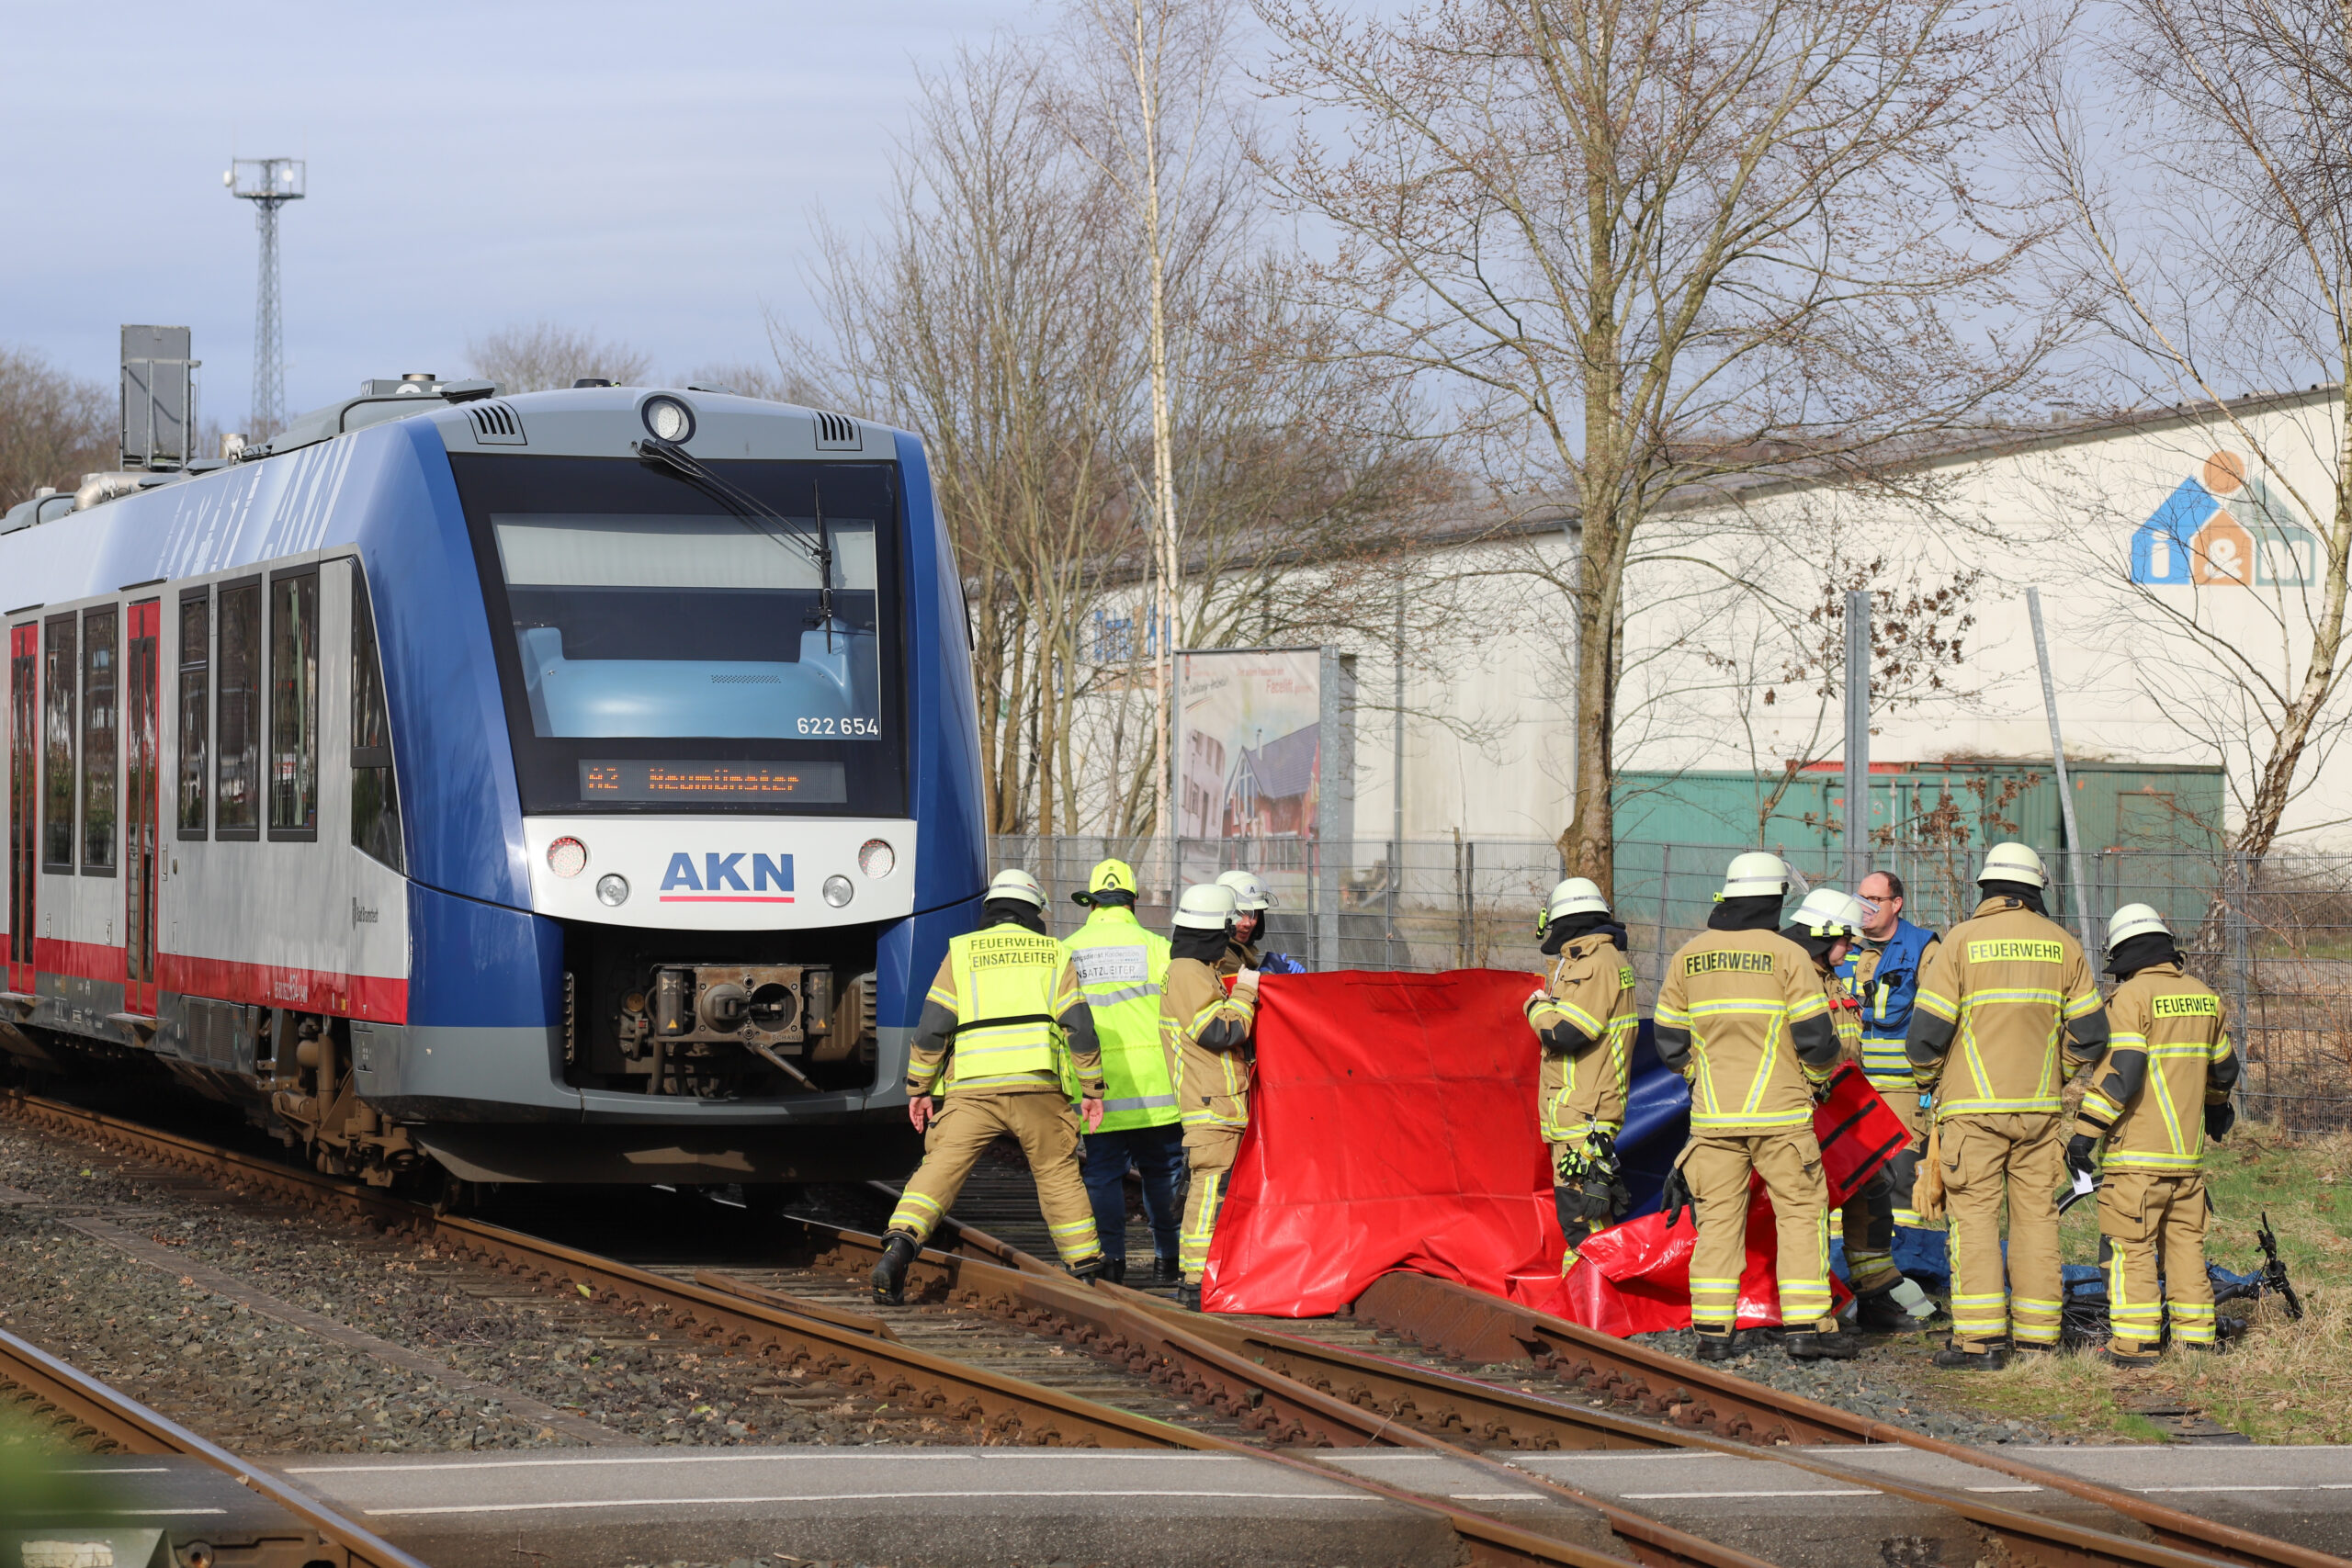 Mann wollte schnell noch den Bahnübergang in Bad Bramstedt überqueren und wird von AKN erfasst – Tot